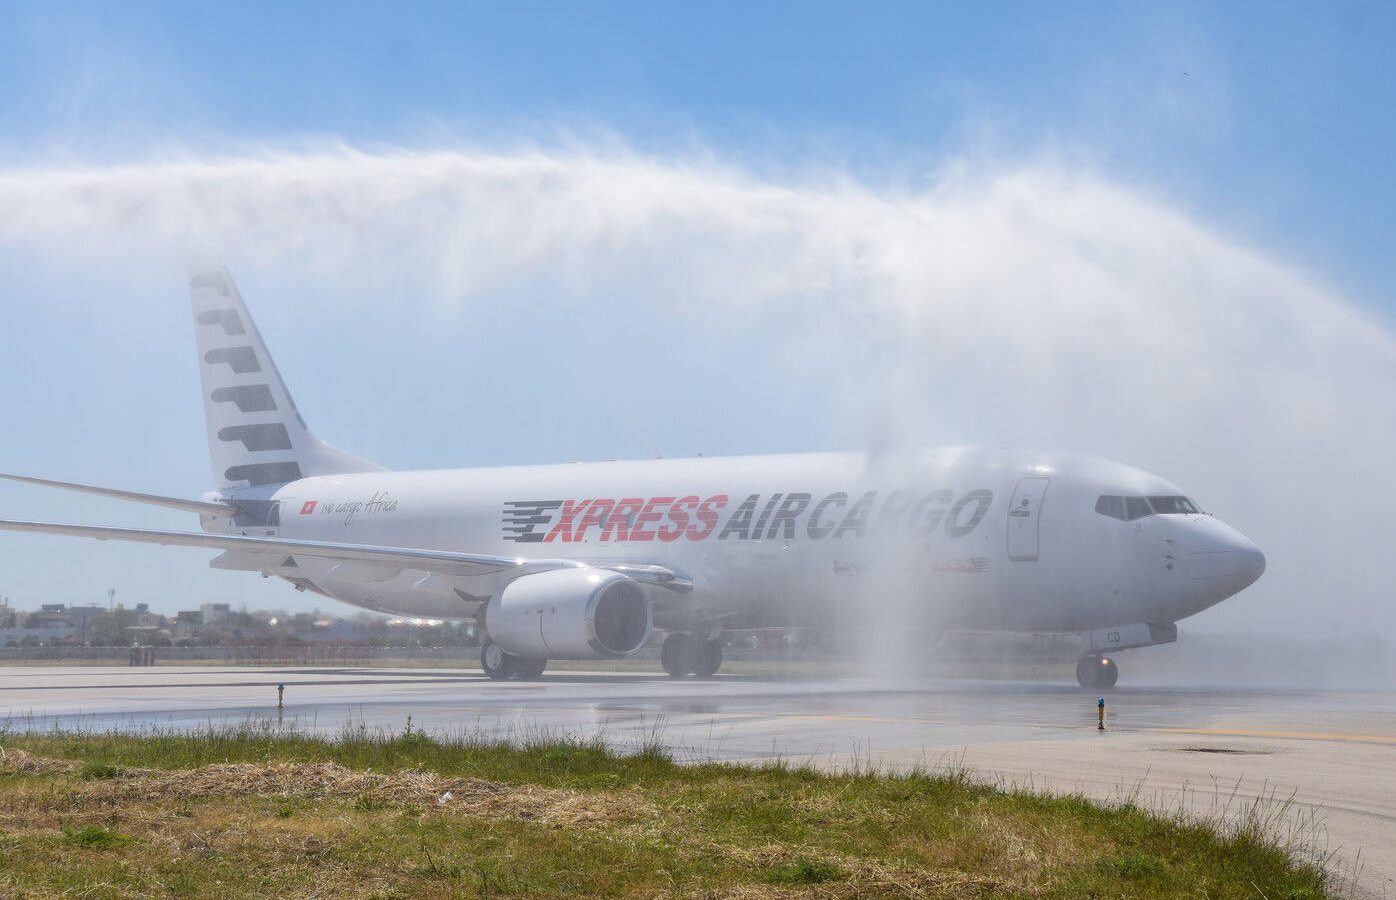 الأولى من نوعها في تونس/ EXPRESS AIR CARGO تعزّز أسطولها بطائرة جديدة